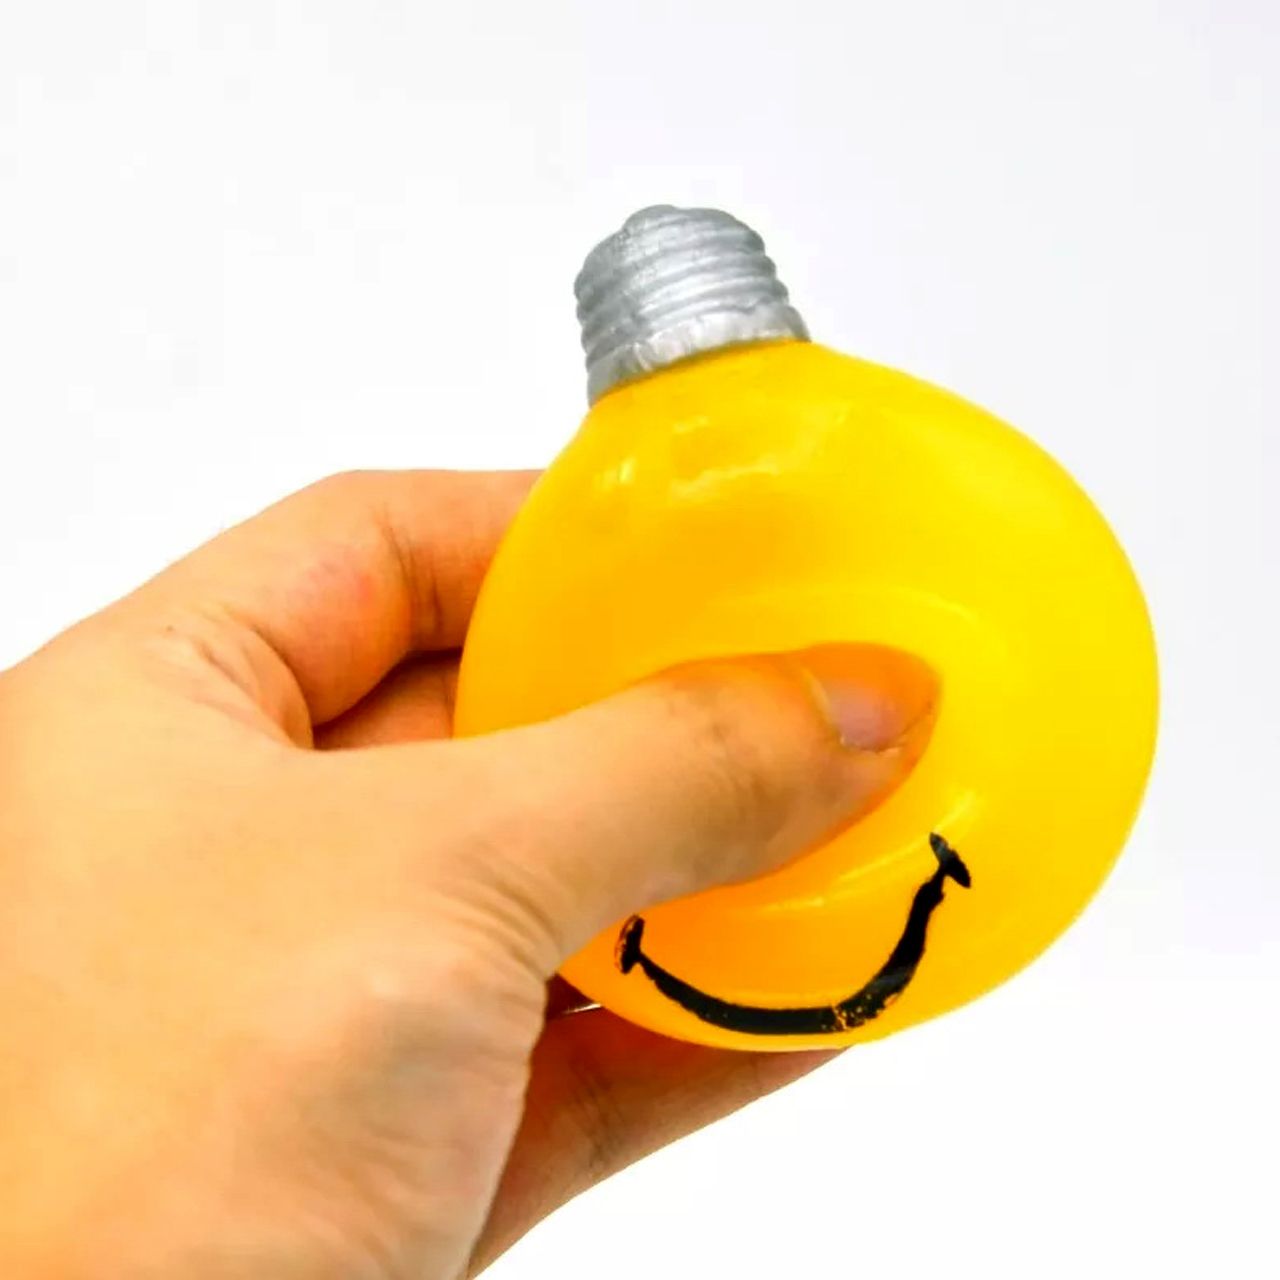 فیجت ضد استرس دنیای سرگرمی های کمیاب مدل لامپ آبکی له شو طرح لبخند -  - 9